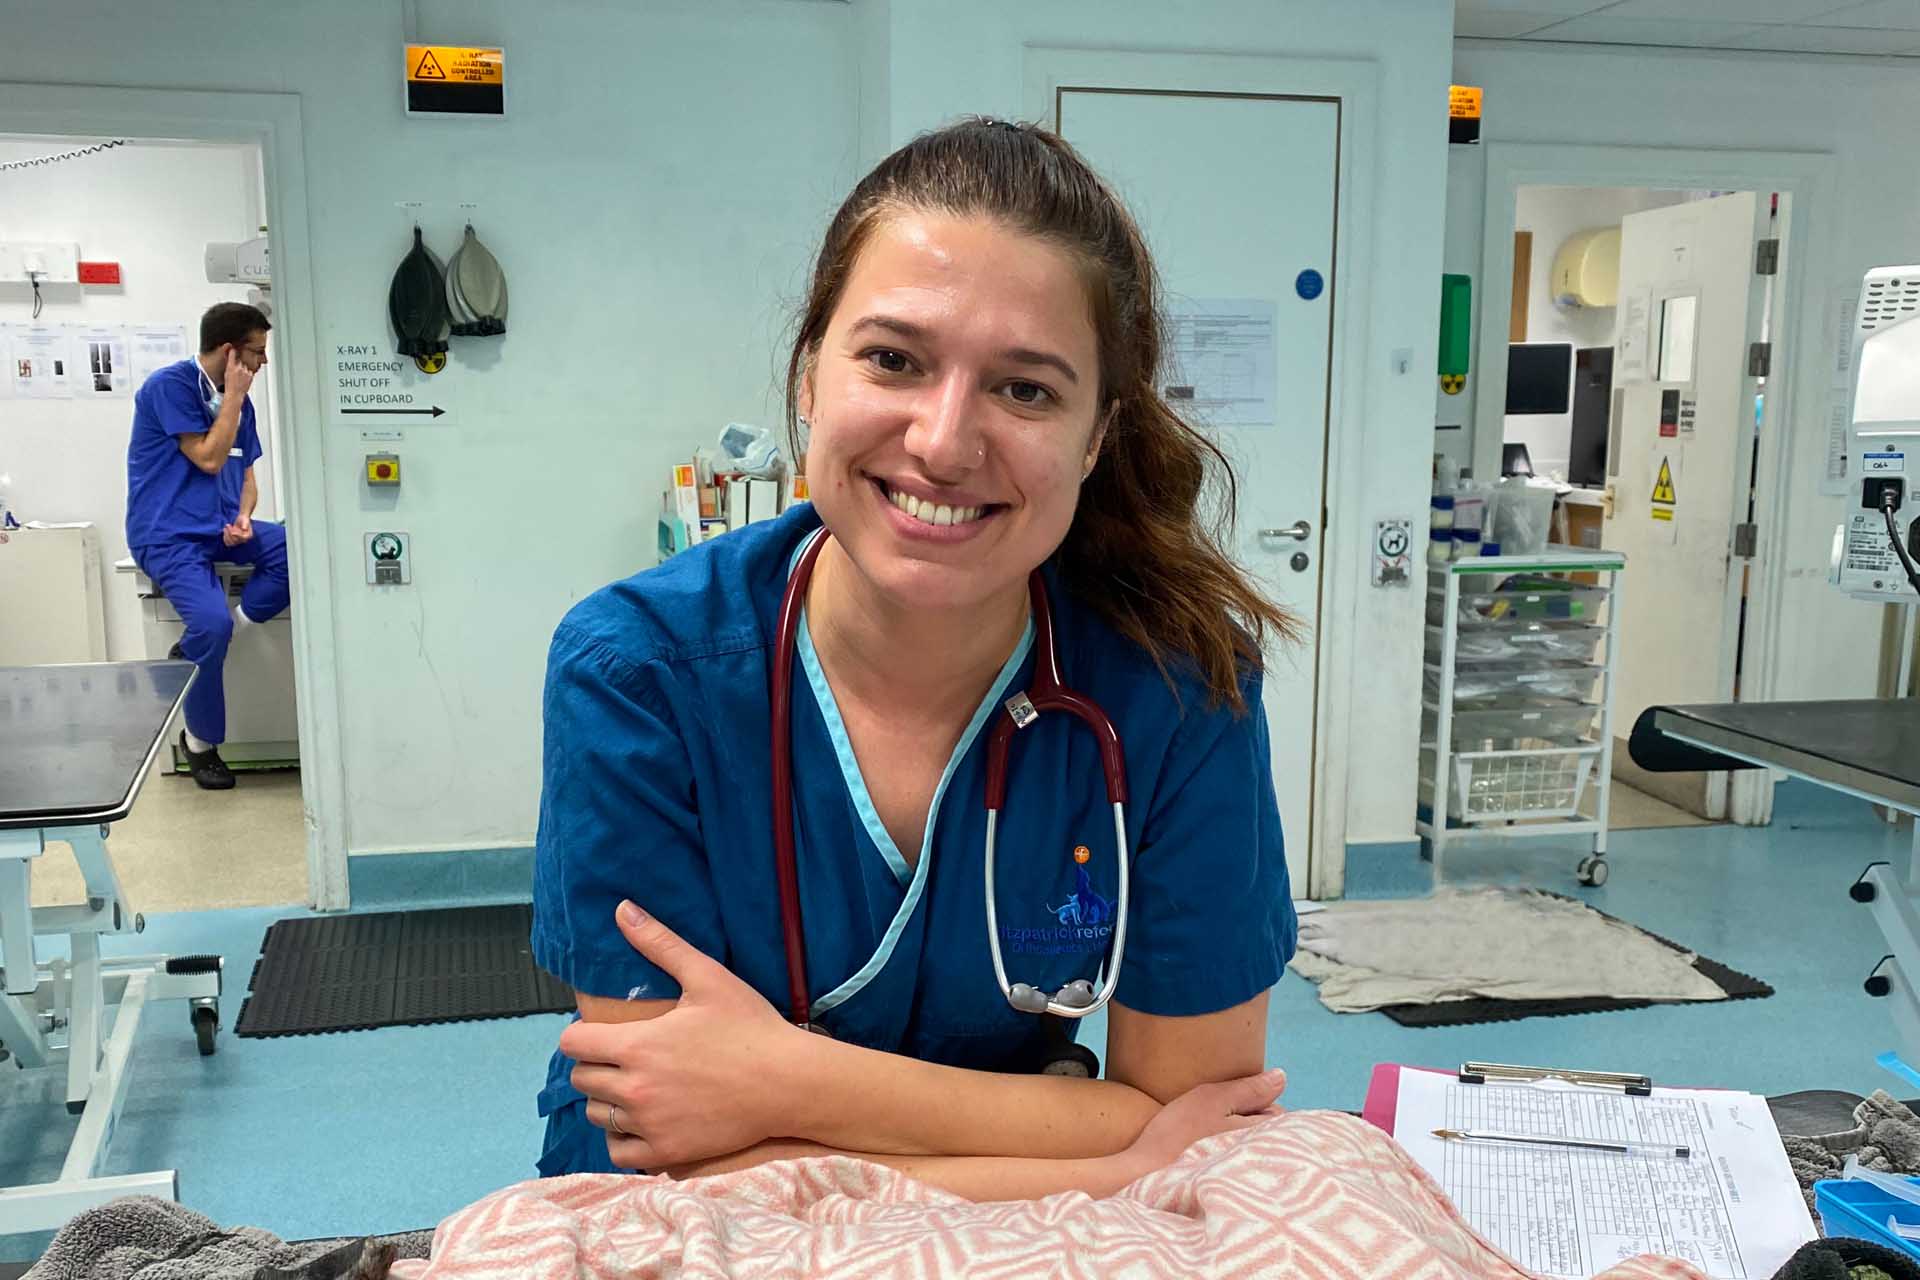 Veterinary nurse smiling